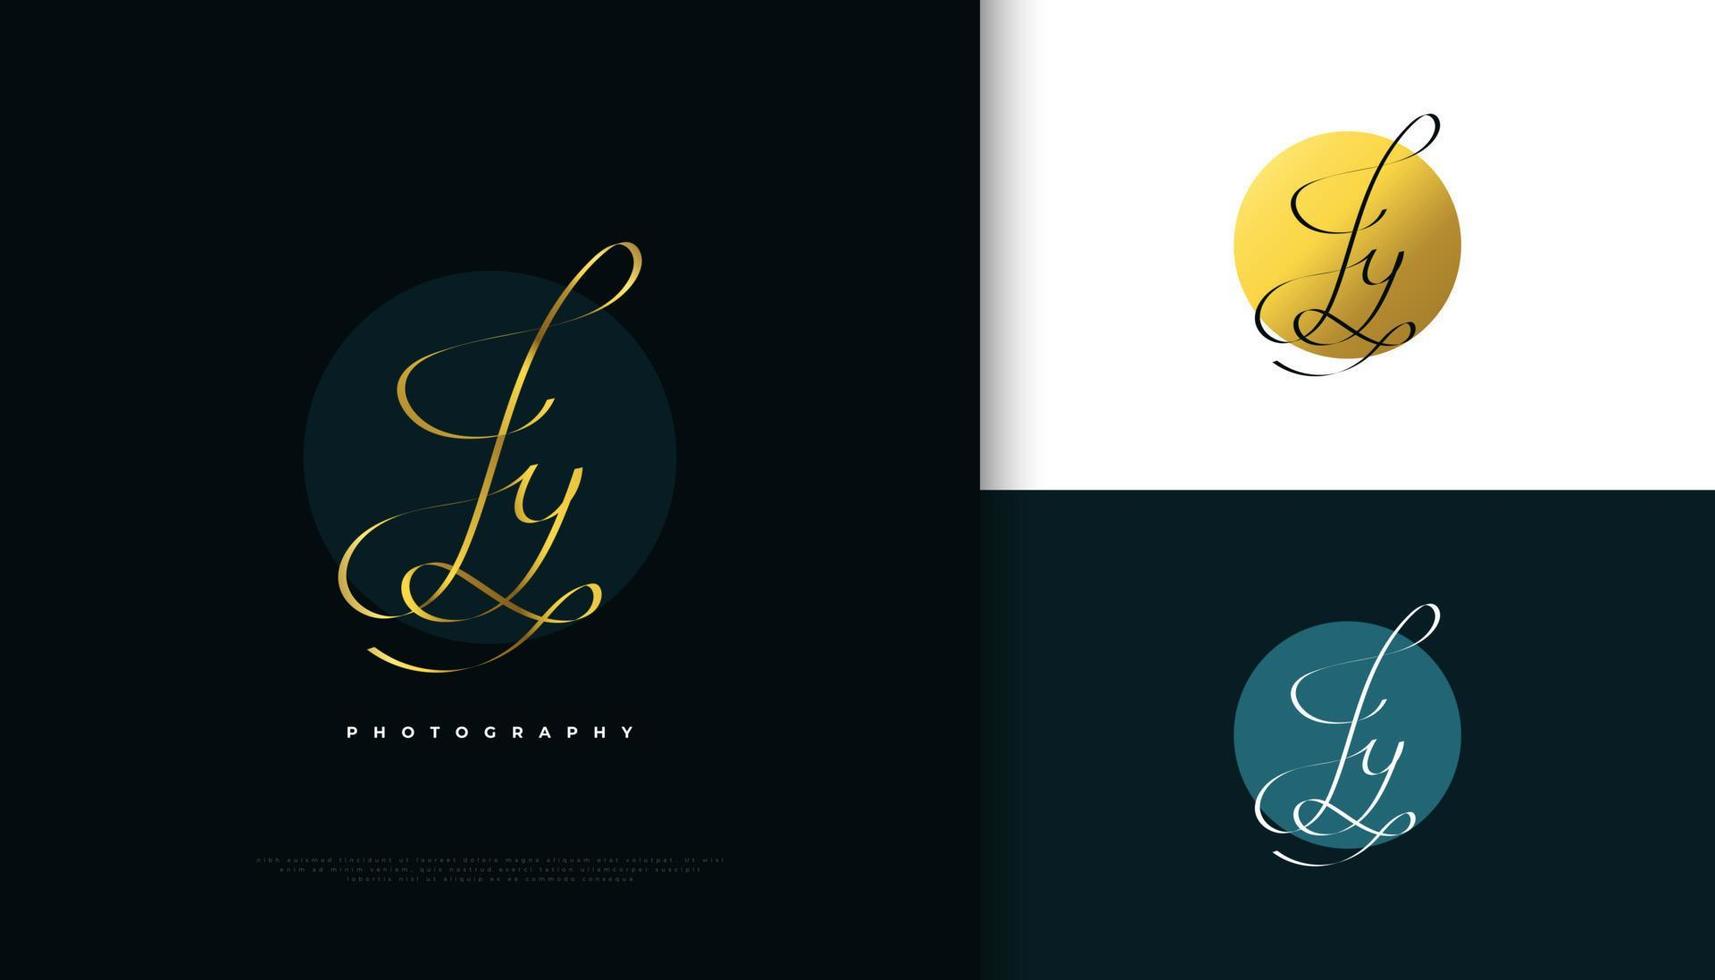 Diseño del logotipo de la firma inicial jy con un estilo de escritura dorado elegante y minimalista. diseño inicial del logotipo j e y para bodas, moda, joyería, boutique e identidad de marca comercial vector